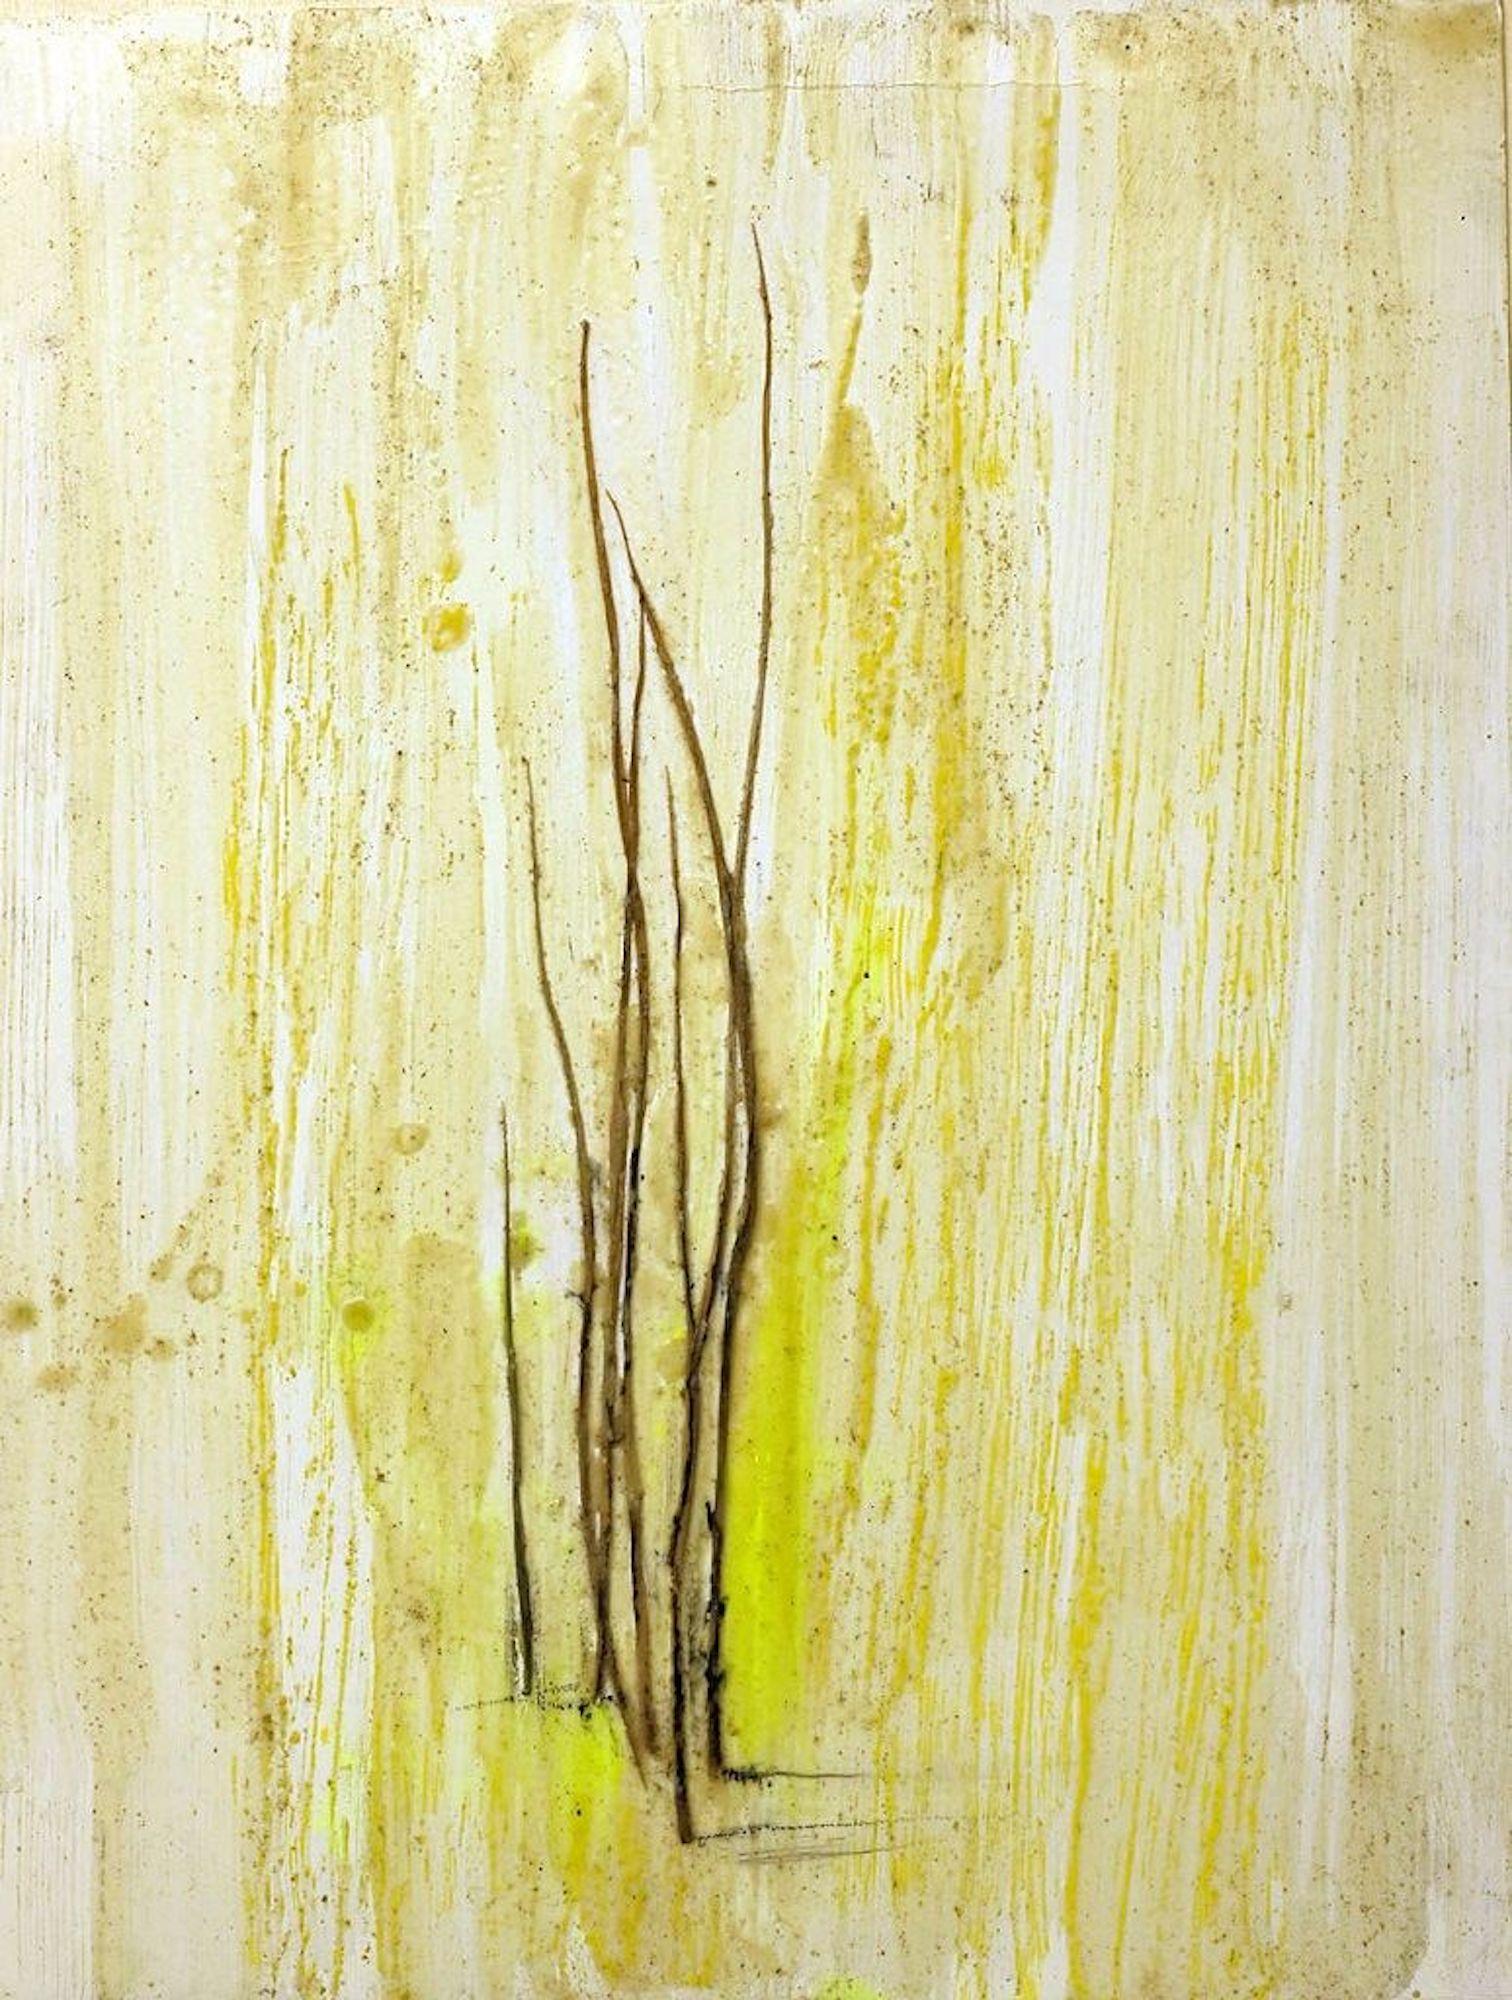 Grass Marks ist ein Originalkunstwerk von Claudio Palmieri aus dem Jahr 2010.

wachspigmente und Grashalme auf Karton aufgetragen. Unterschrift, Titel, Datum und Technik auf der Rückseite.

Sehr guter Zustand. Originaltitel: Segni d'erba

Das